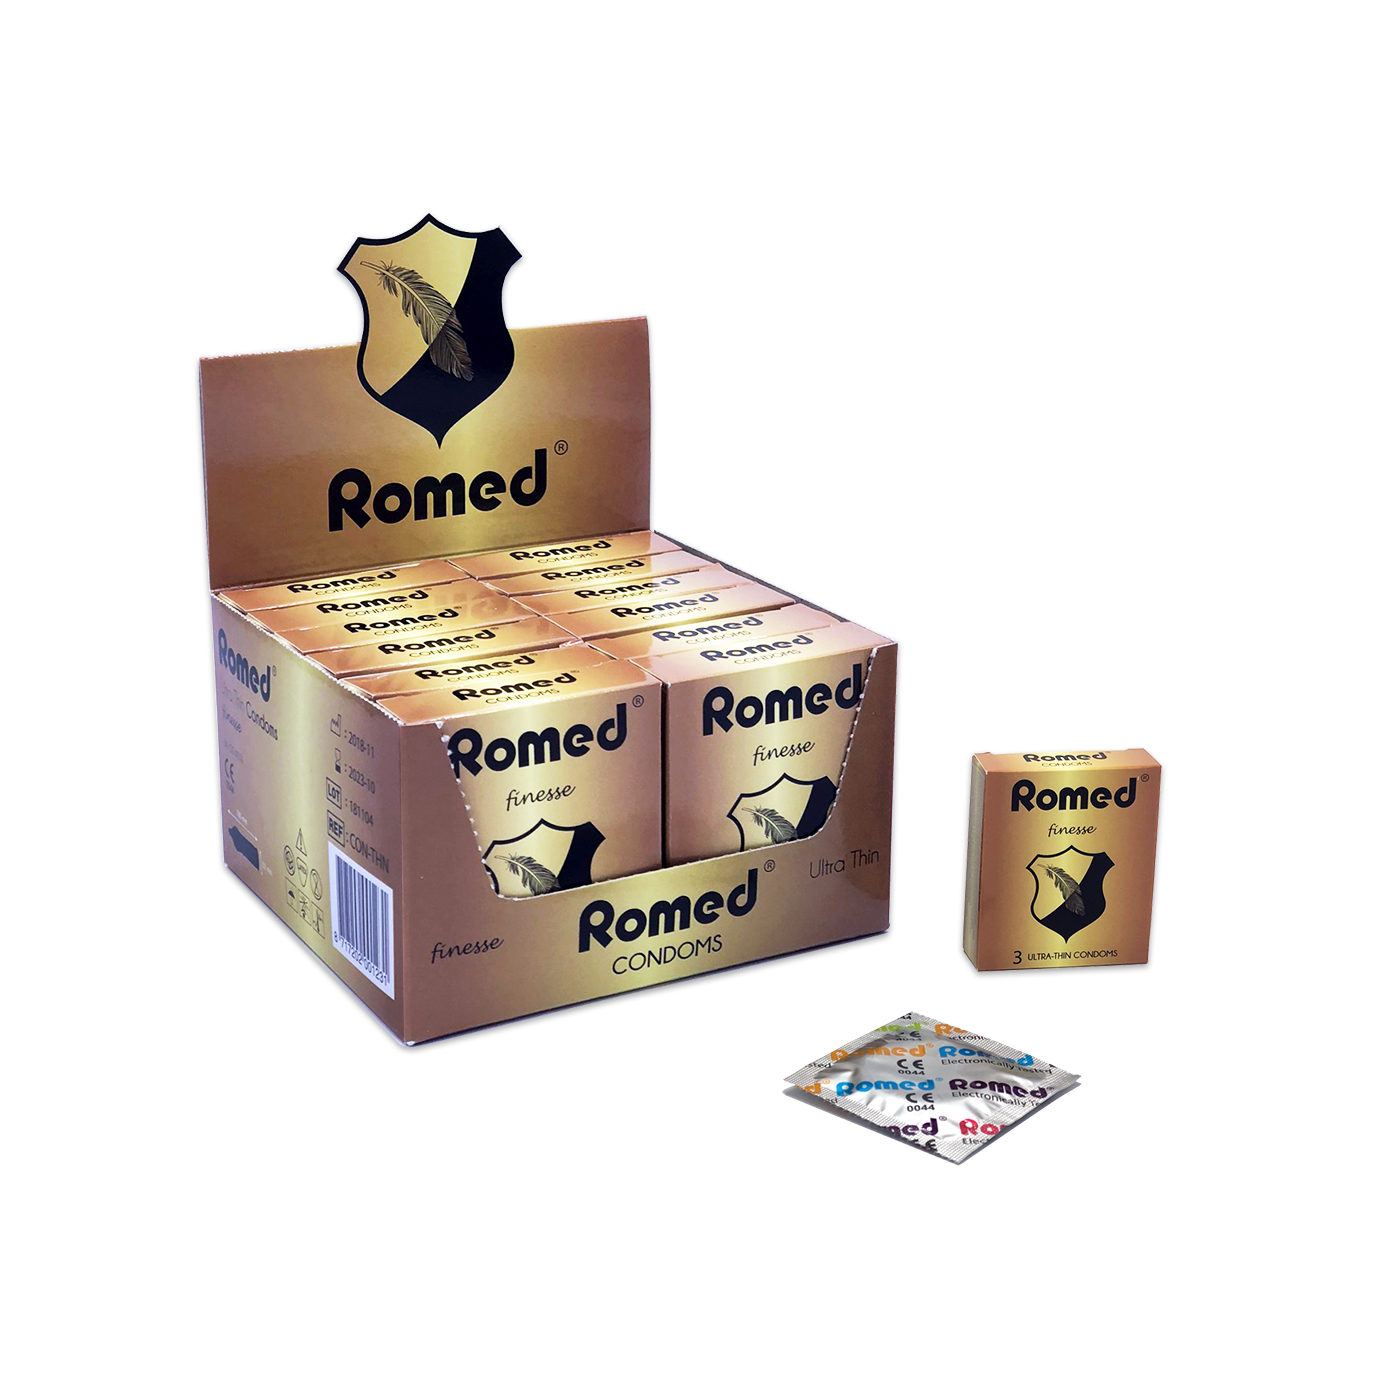 CON-THN Profilácticos Romed, extrafinos, empaquetados unitariamente en papel de aluminio (cuadrado), 3 unidades en una caja pequeña, 12 x 3 unidades = 36 unidades en una caja lista para usar, 4 x 36 unidades = 144 unidades en una caja interior (= 1 bruta), 30 x 144 unidades = 4320 unidades en una caja de cartón.